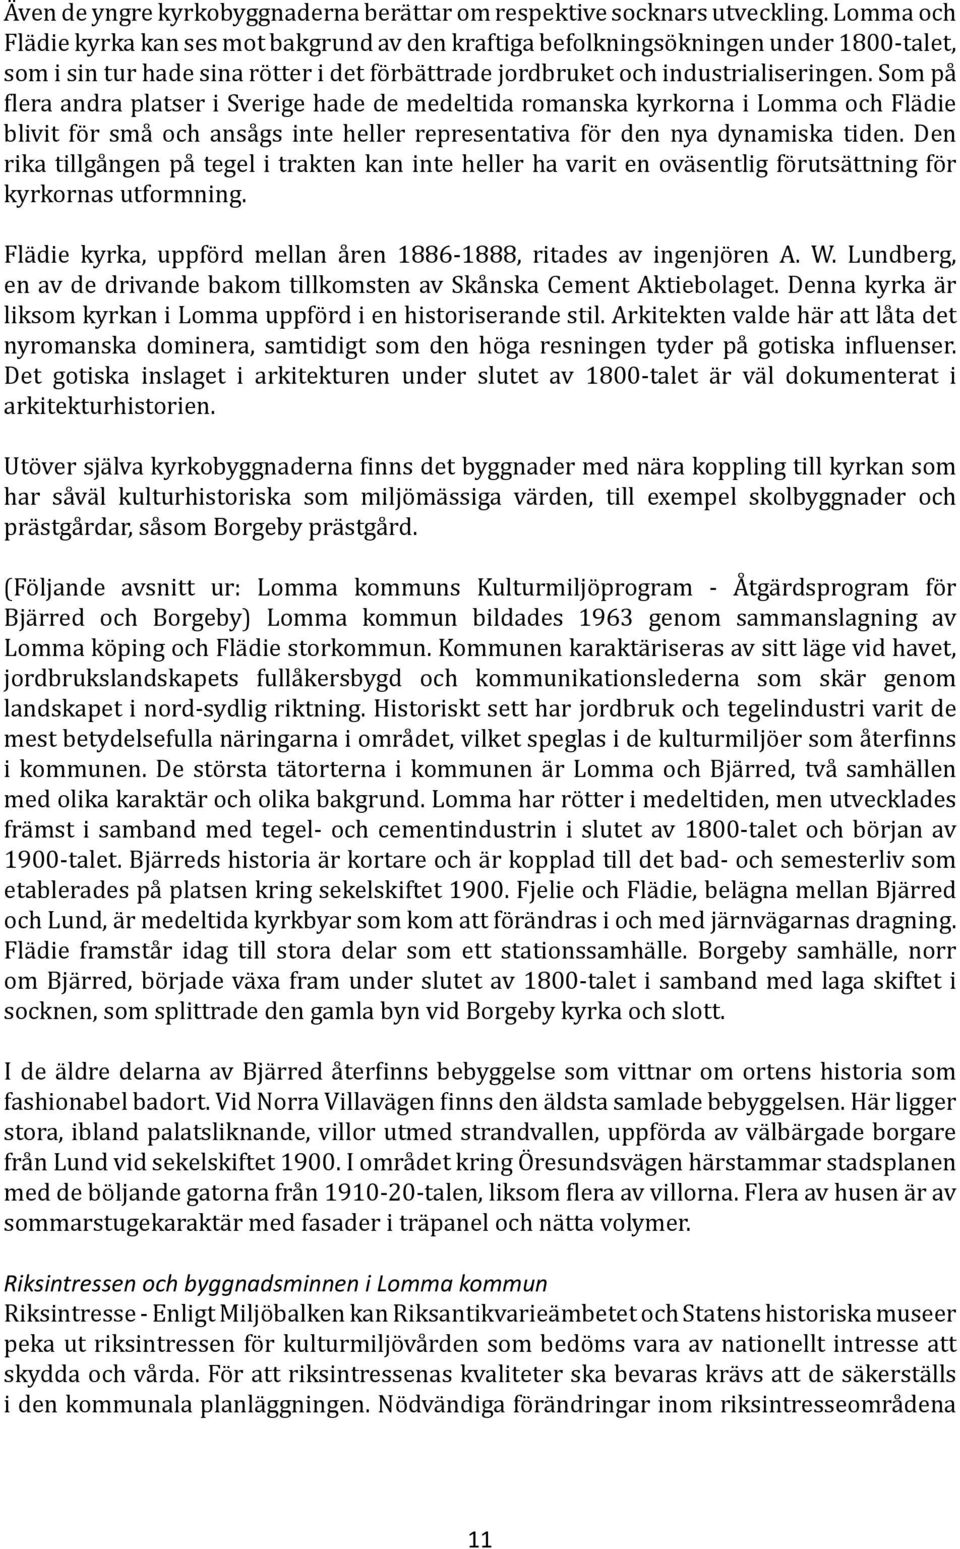 Som på flera andra platser i Sverige hade de medeltida romanska kyrkorna i Lomma och Flädie blivit för små och ansågs inte heller representativa för den nya dynamiska tiden.